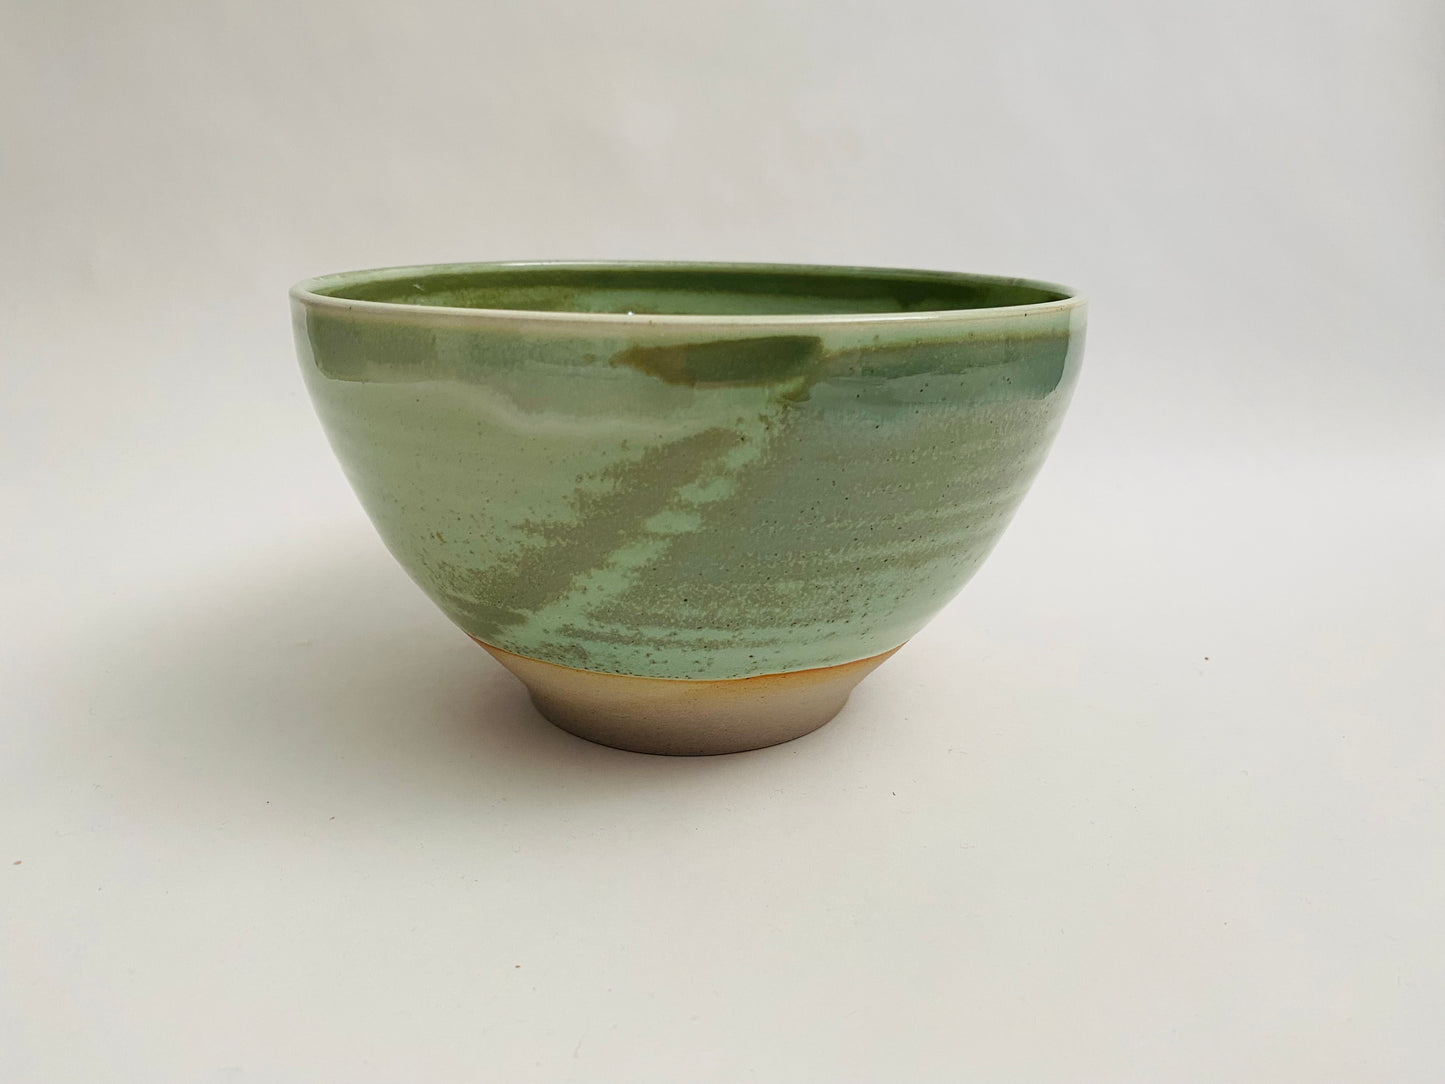 Light green/grey ramen bowls